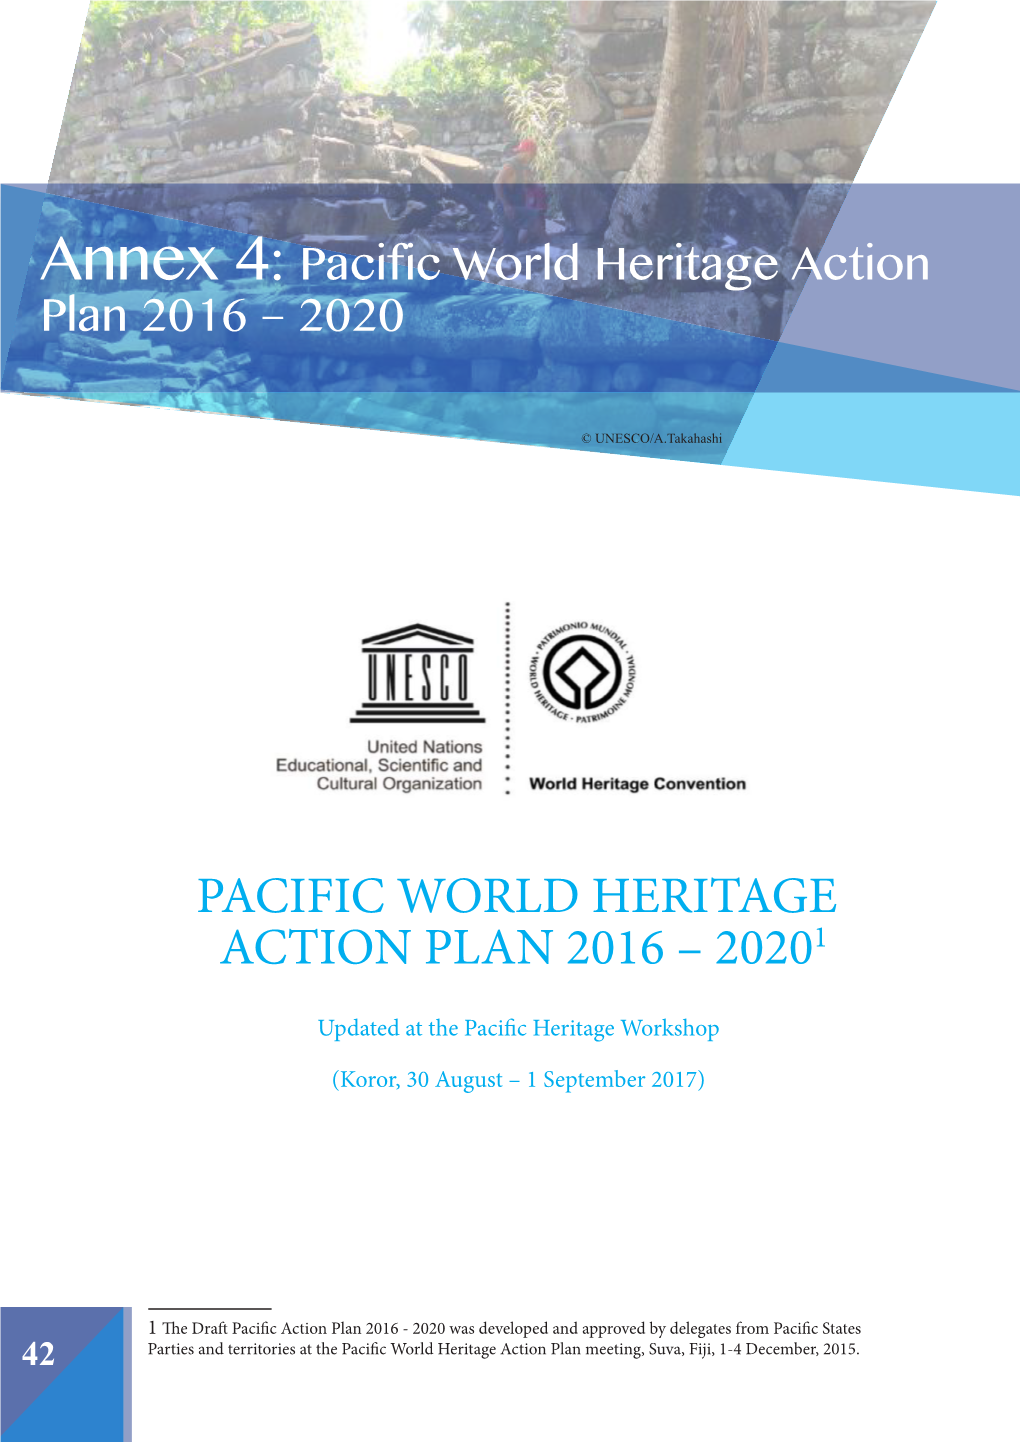 Pacific Heritage Workshop; Pacific Heritage Workshop, Koror, Palau